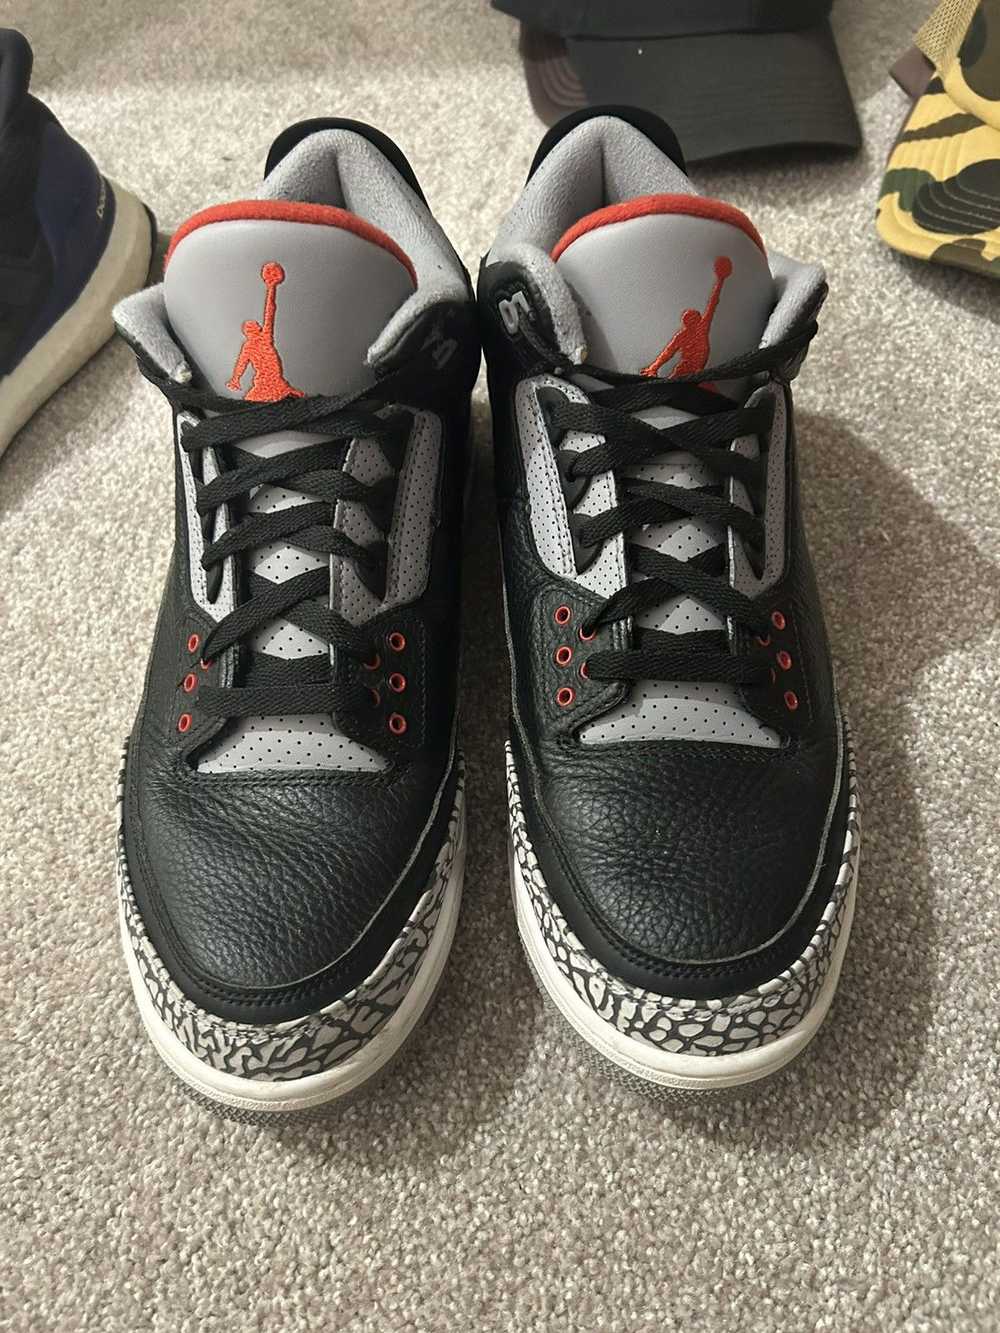 Jordan Brand Nike air Jordan black cement 3s 2018 - image 3